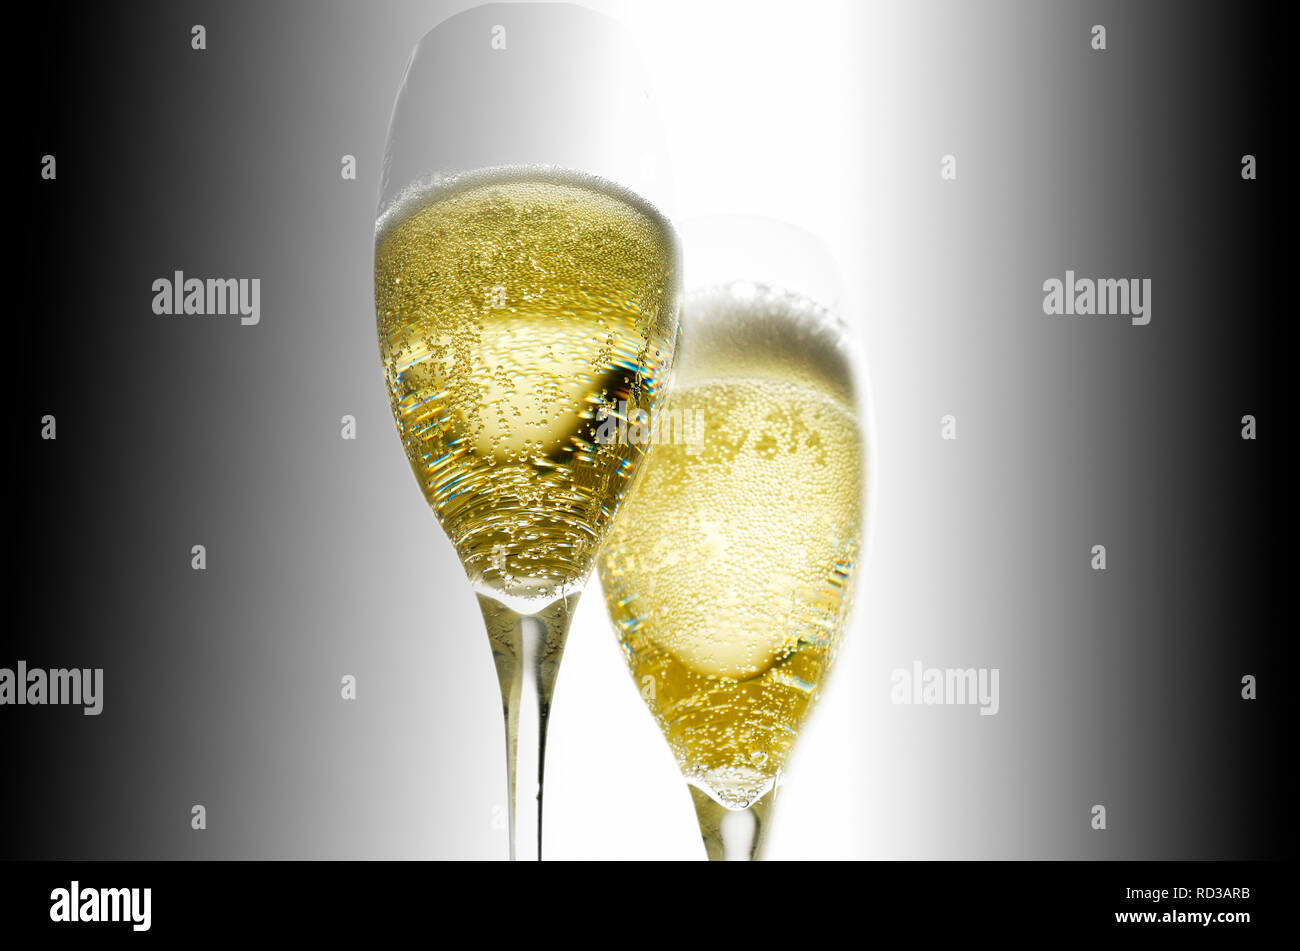 Cierre de copas de champagne, Foto de estudio Foto de stock